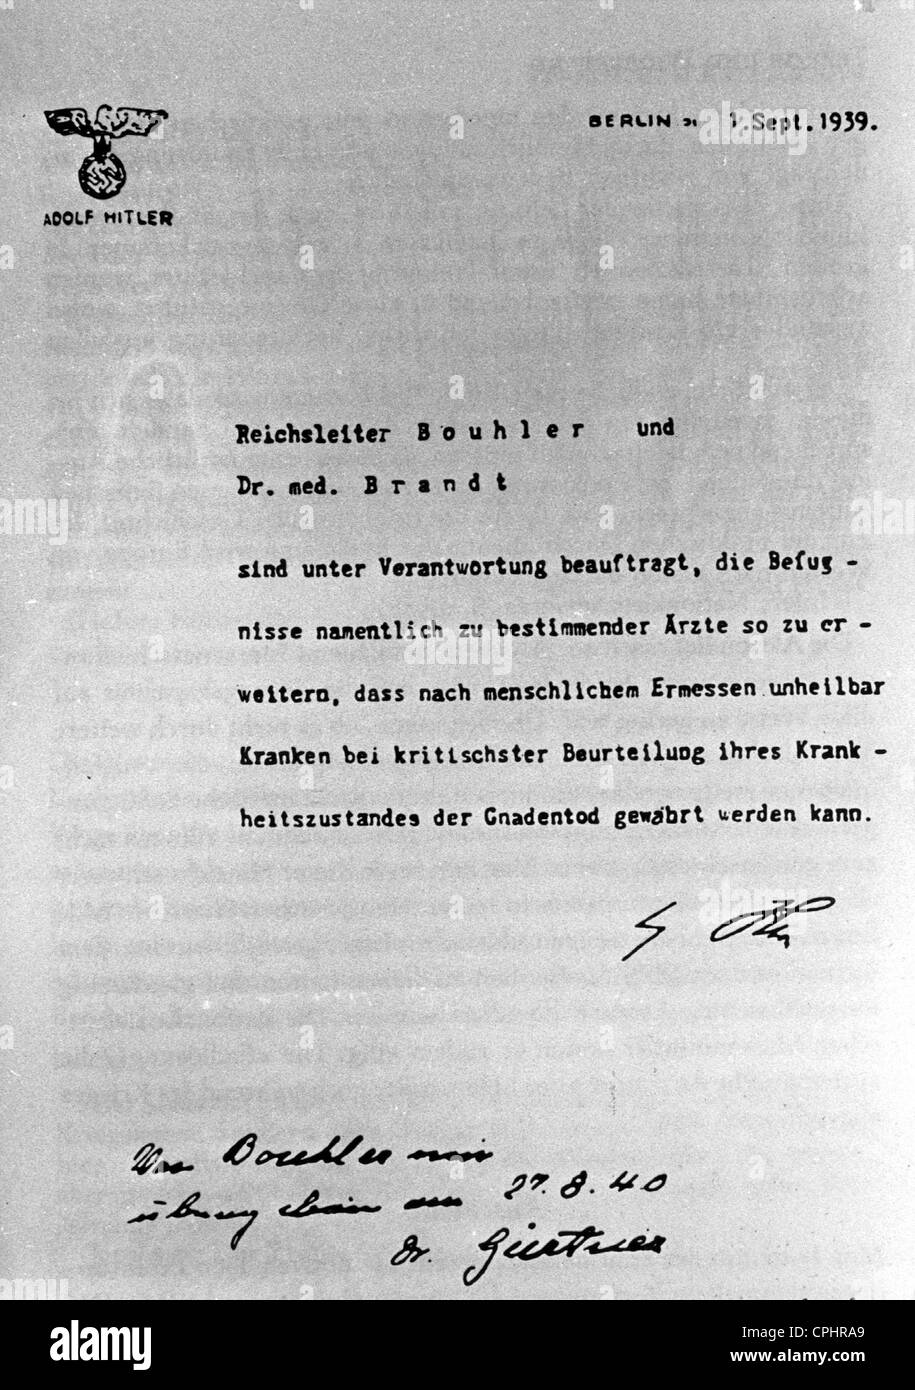 Hitler Memo segreto sul programma di eutanasia, 1939 Foto Stock